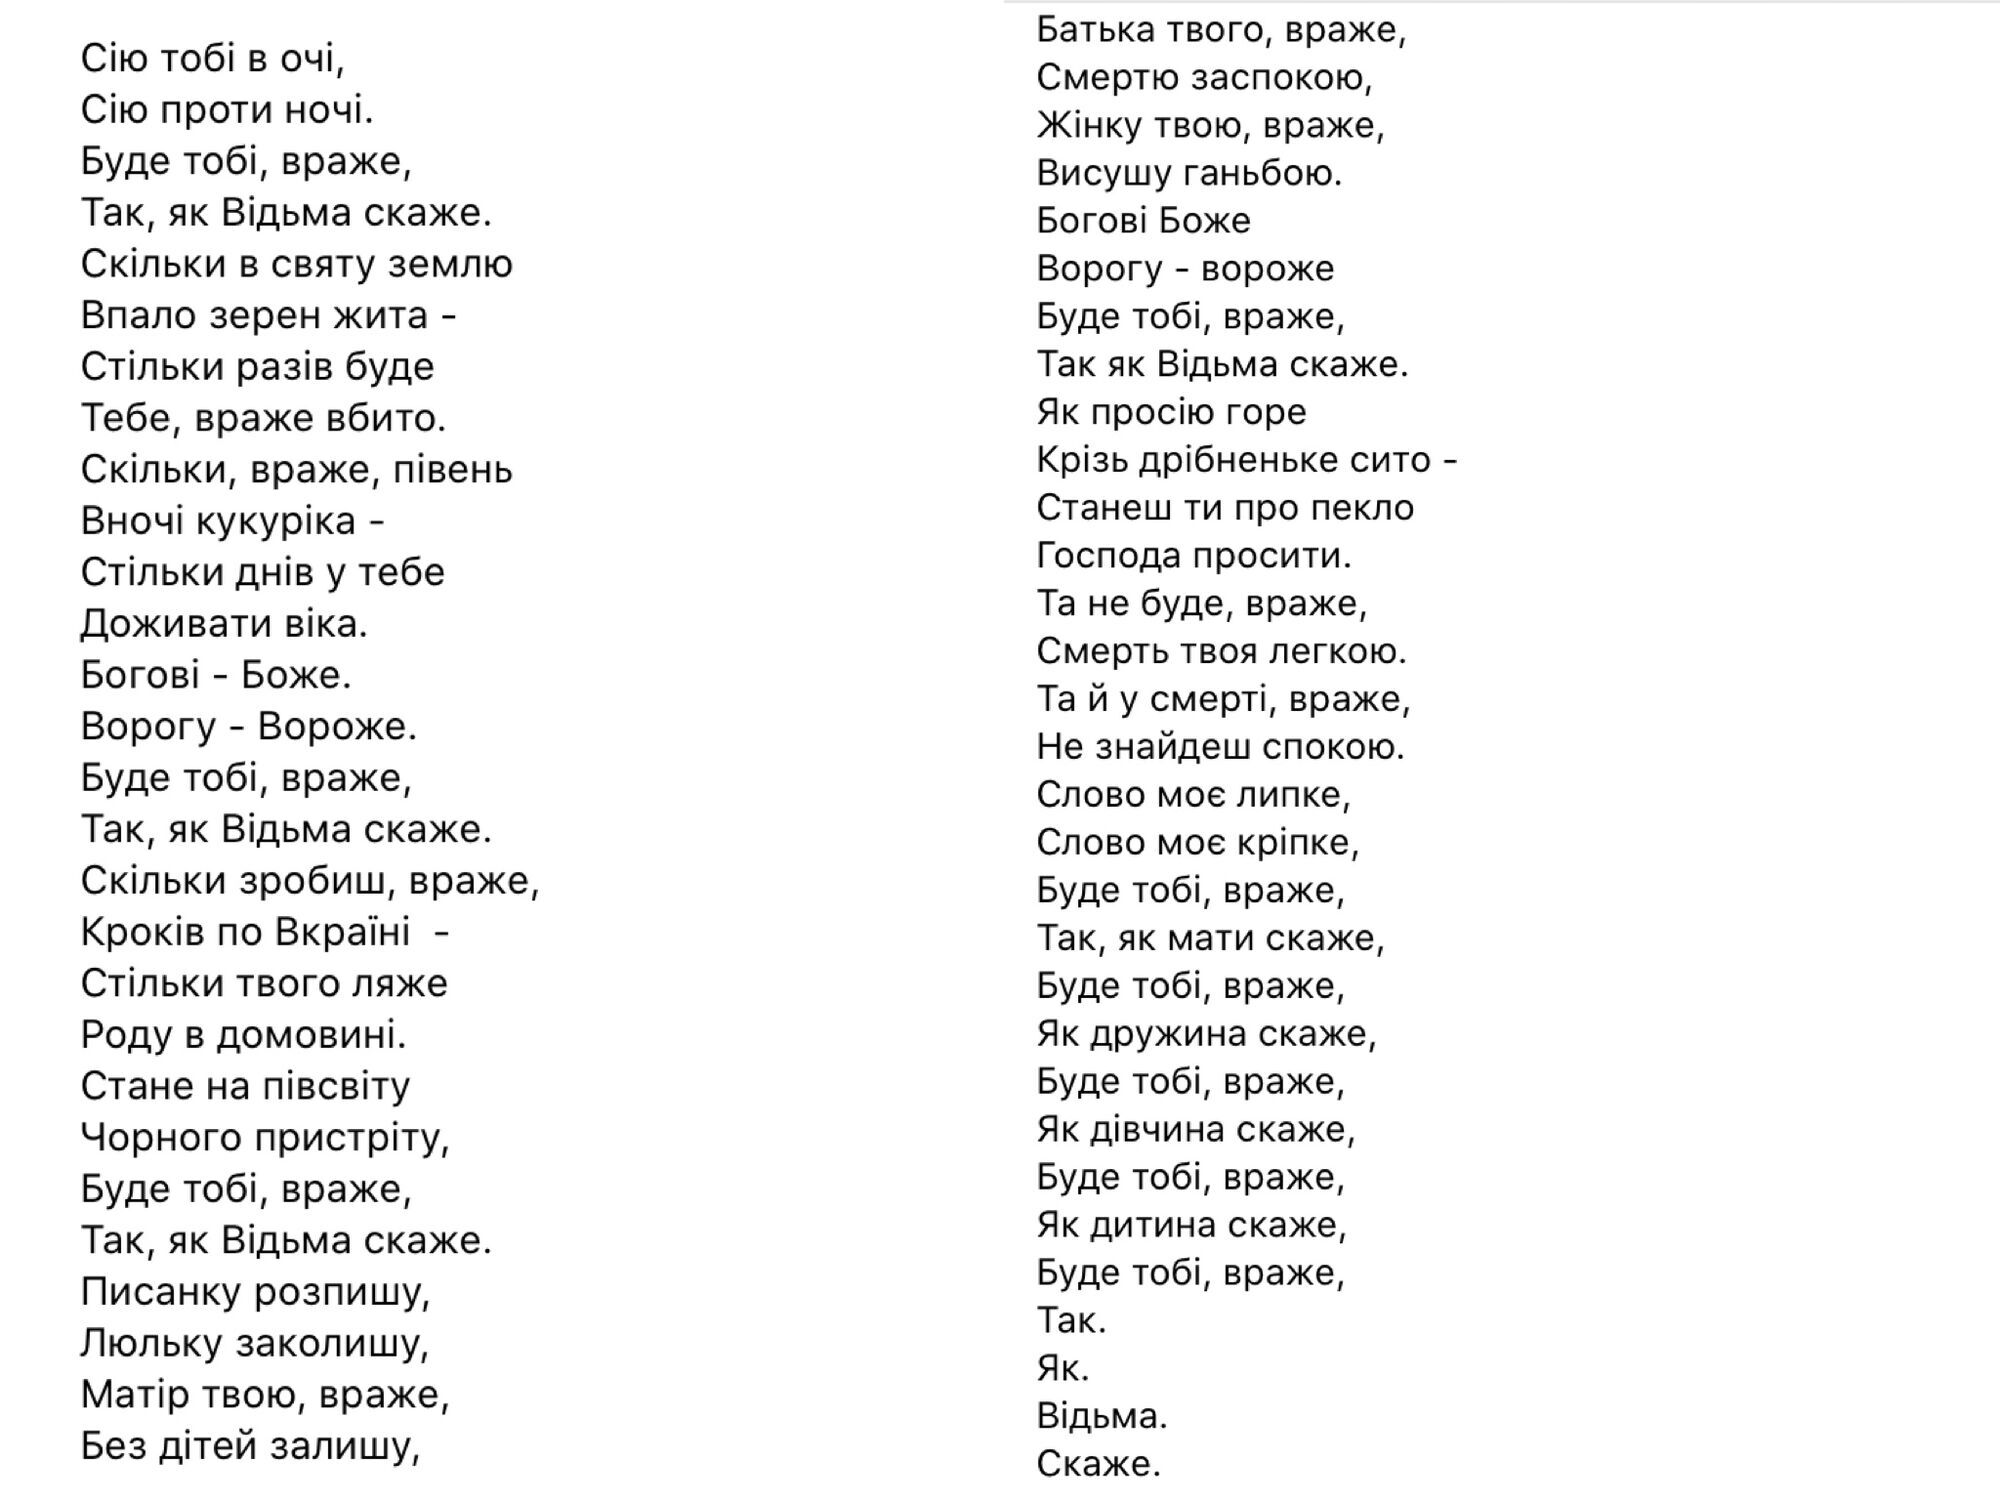 Пісня-заклинання "Враже" Енджі Крейди стала магічним гімном України. Відео